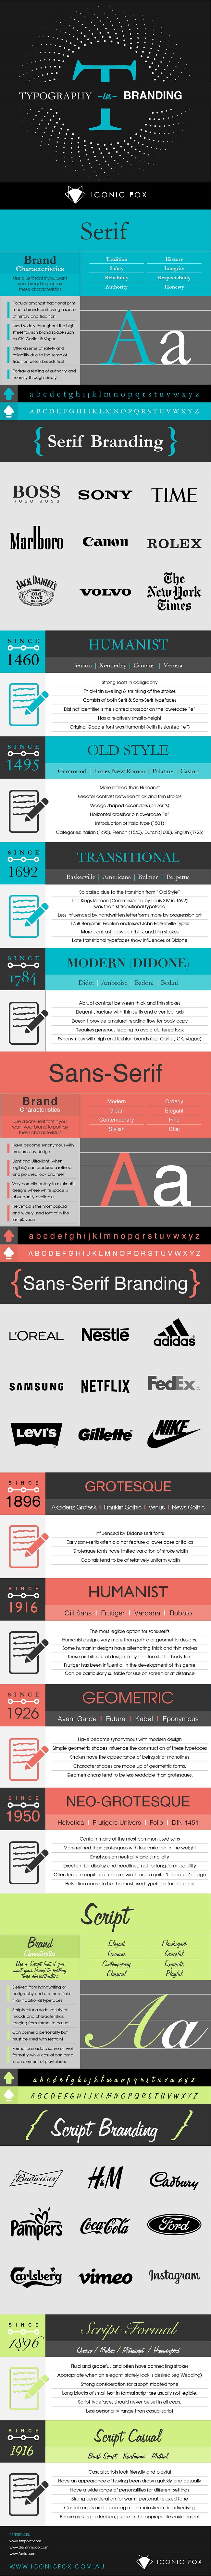 Gợi ý những font chữ phù hợp với thương hiệu 